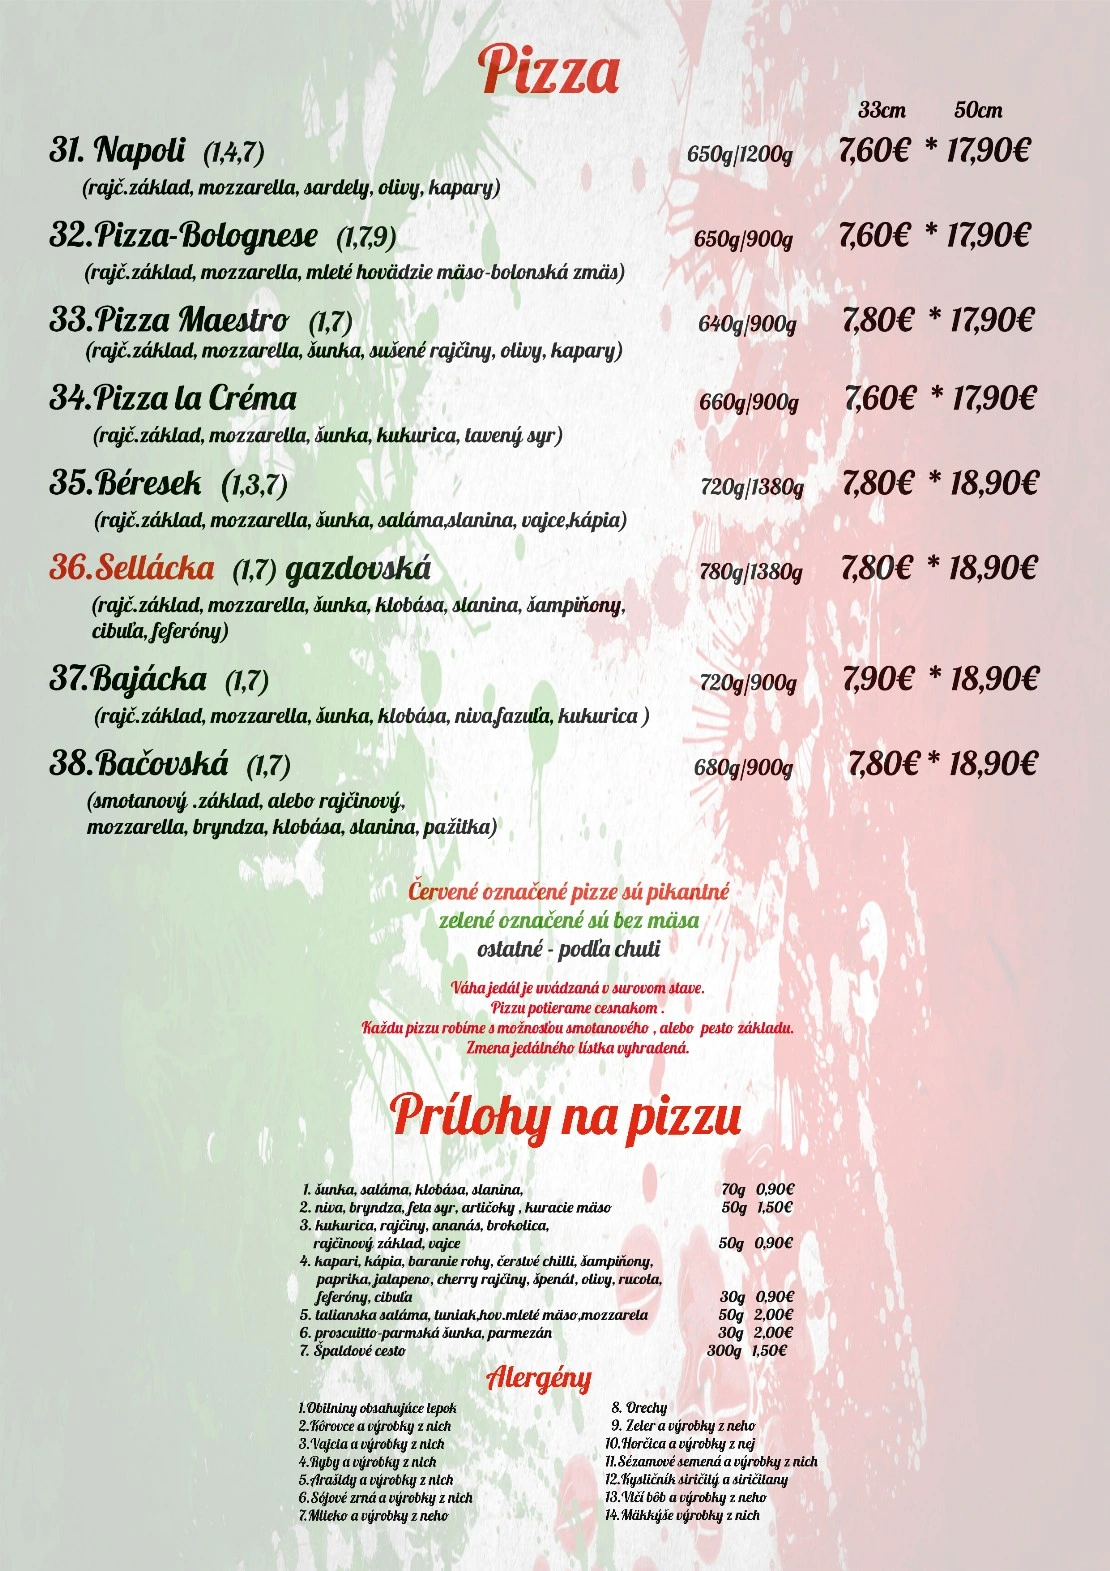 Pizza marco jedalny listok